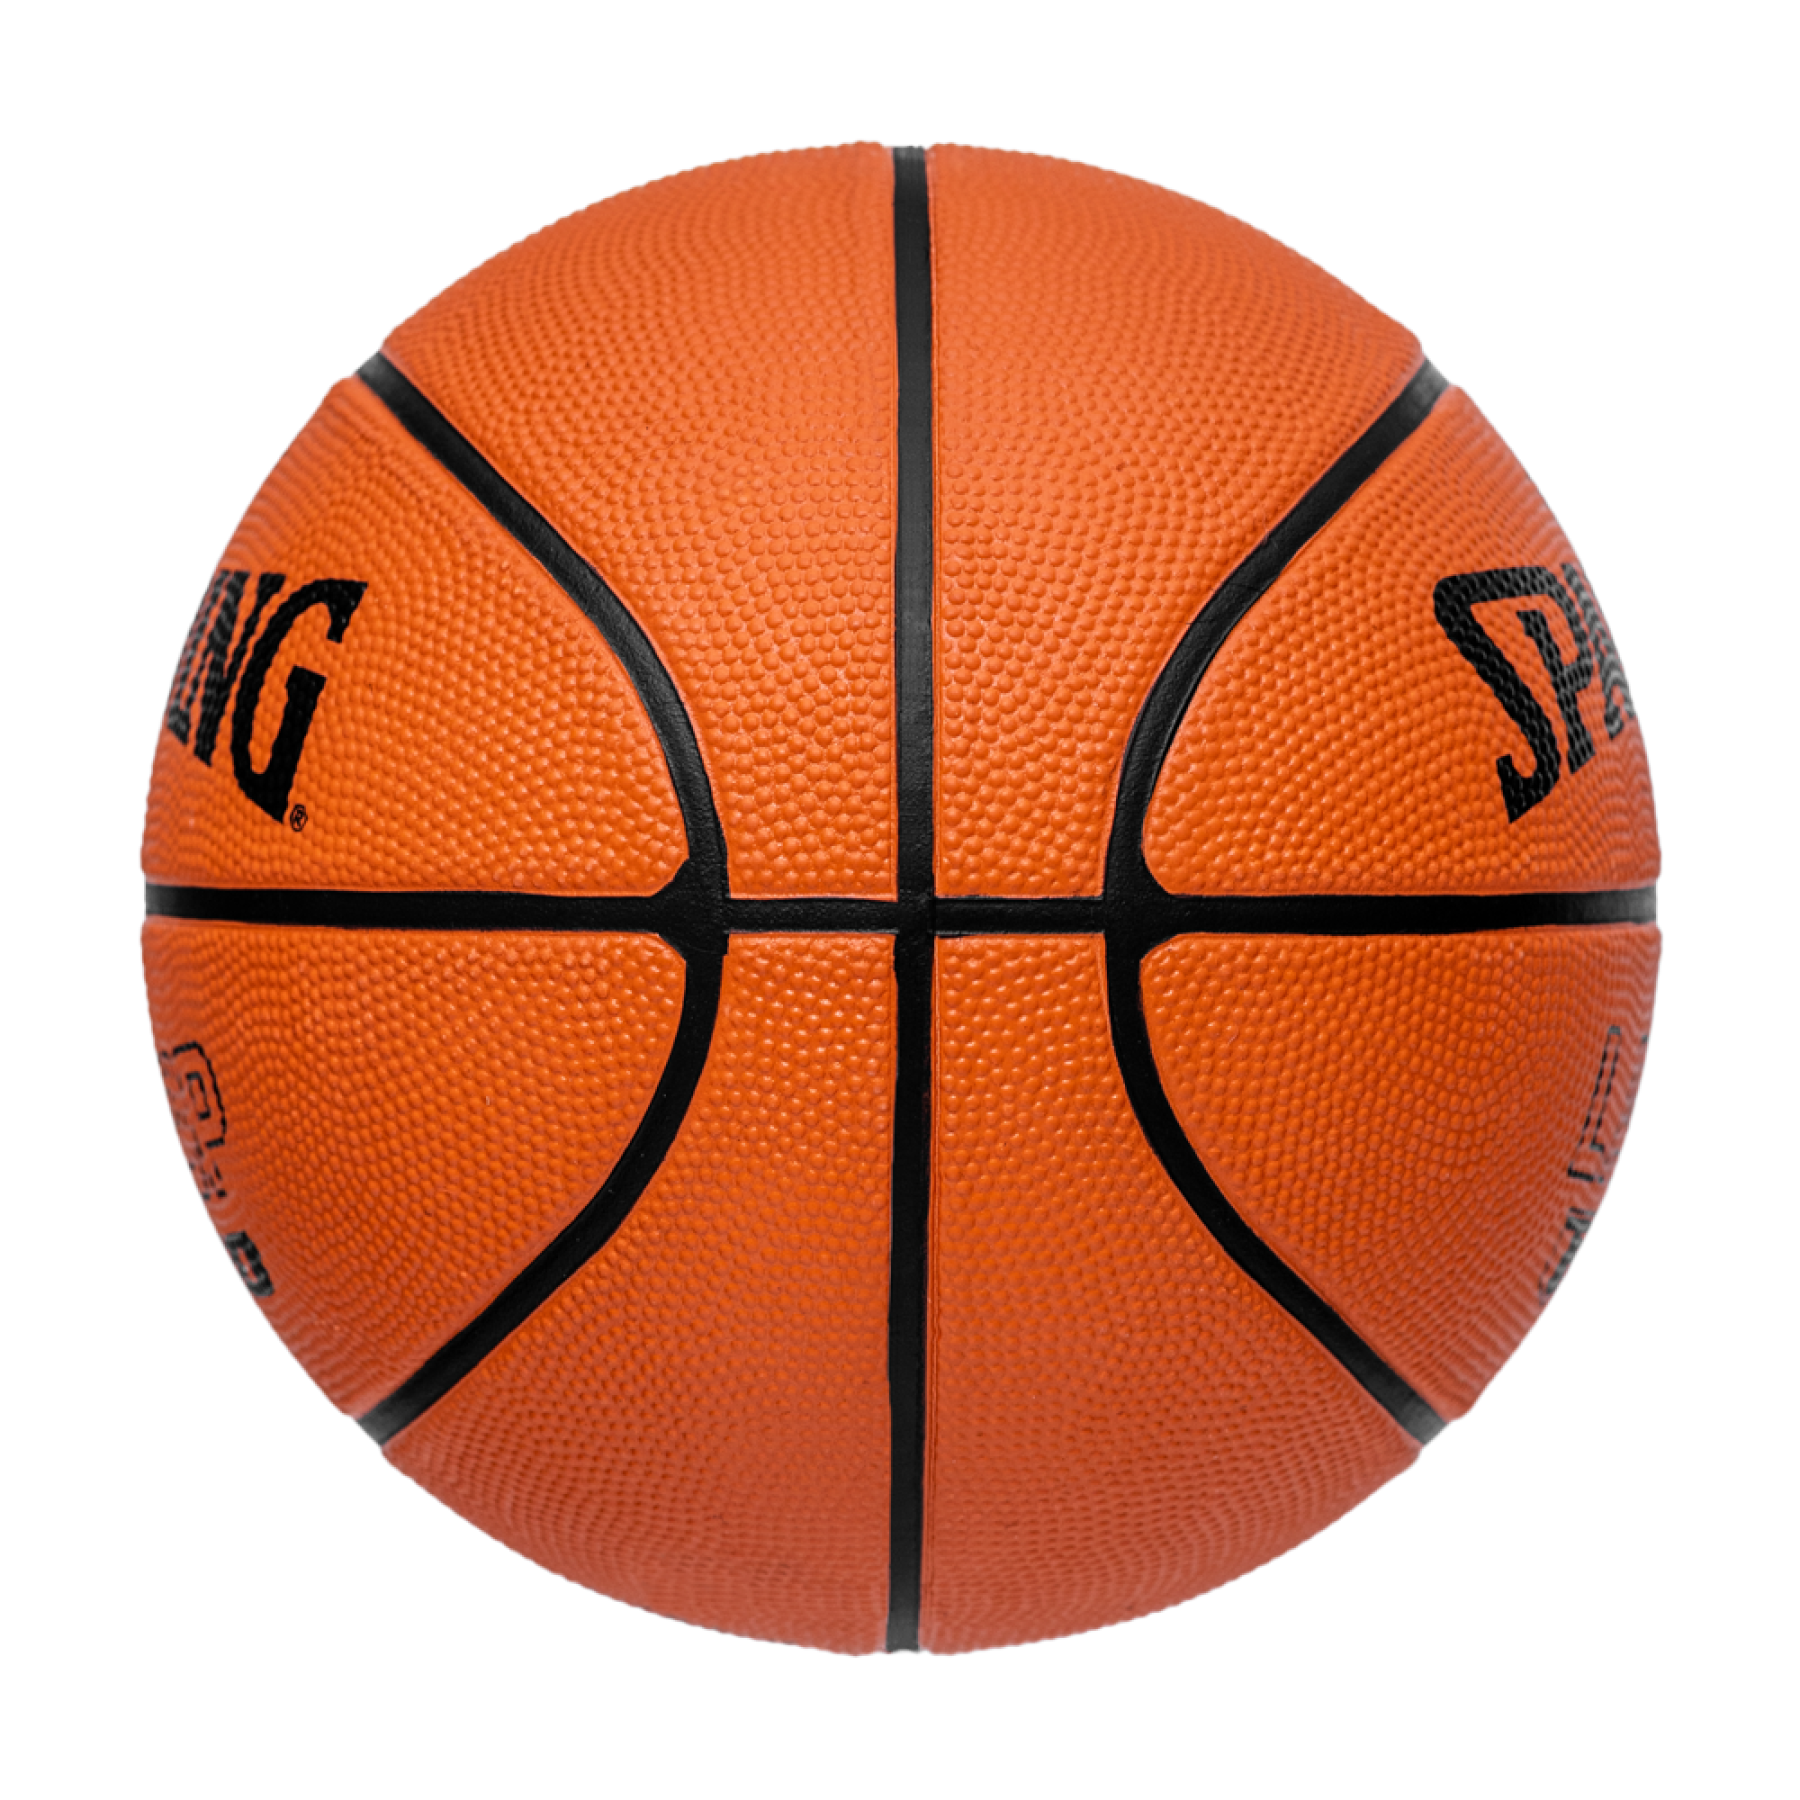 Basketball Spalding Layup TF-50